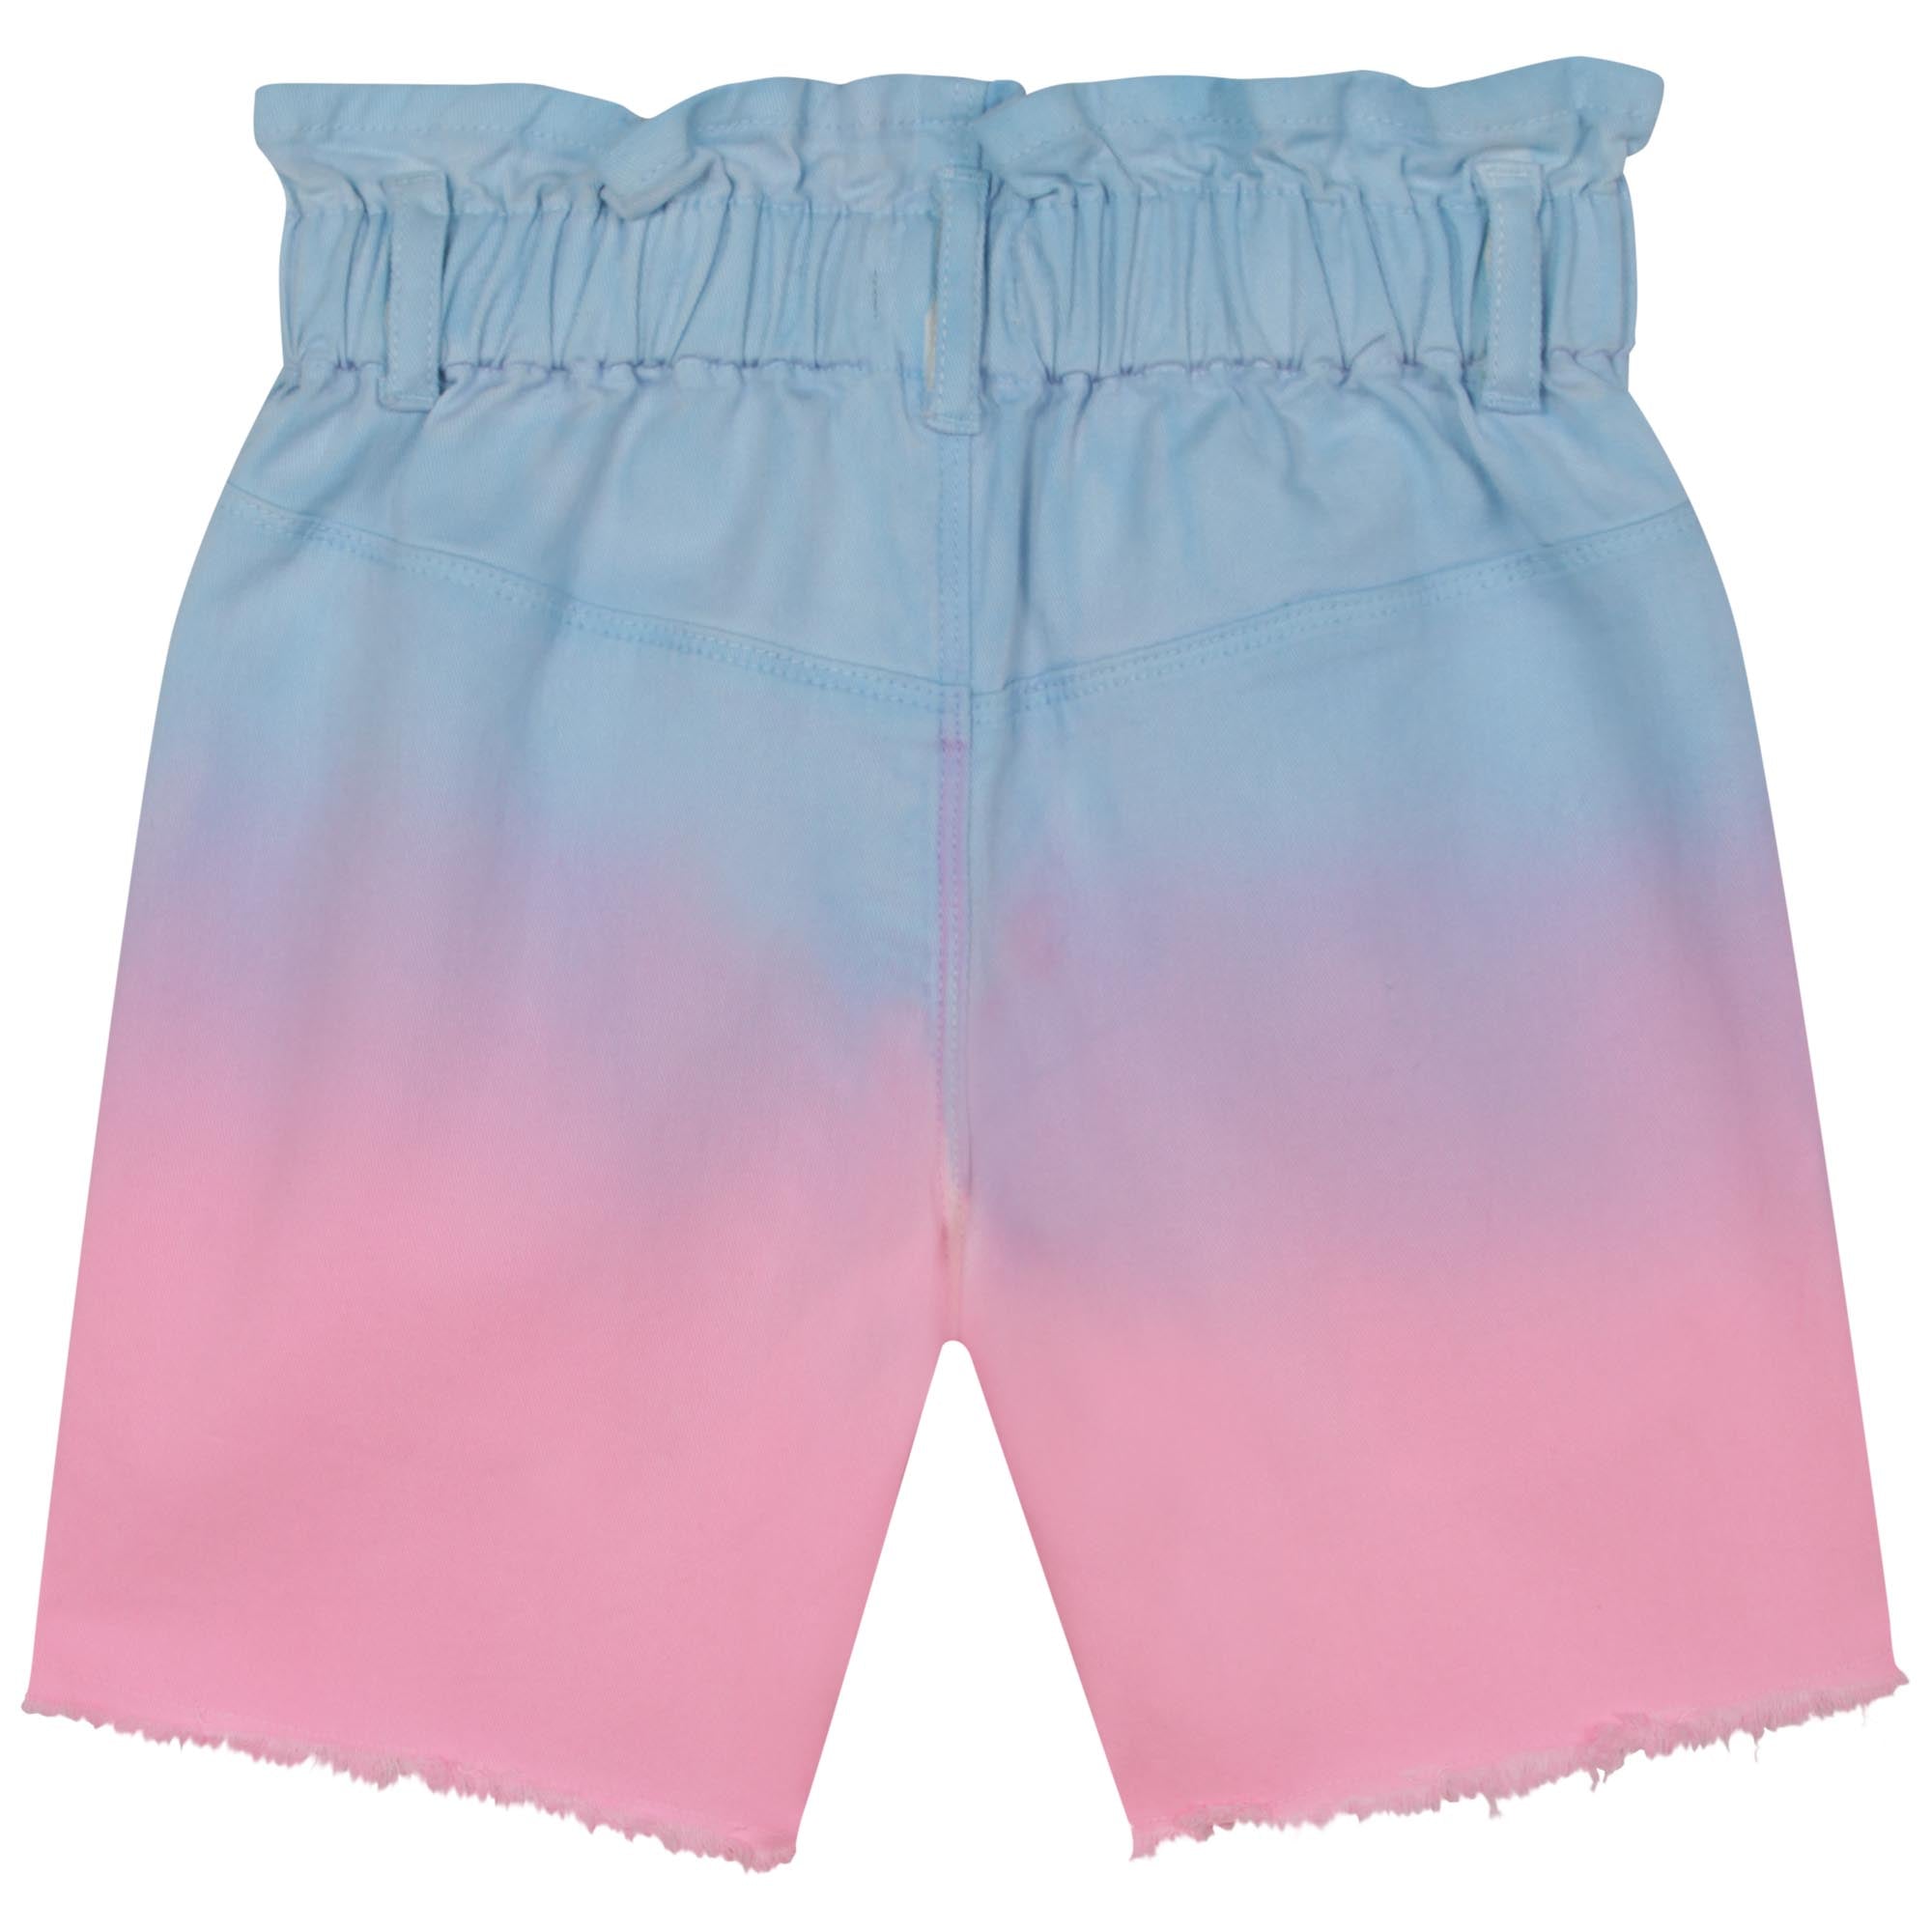 Girls Pink Cotton Shorts